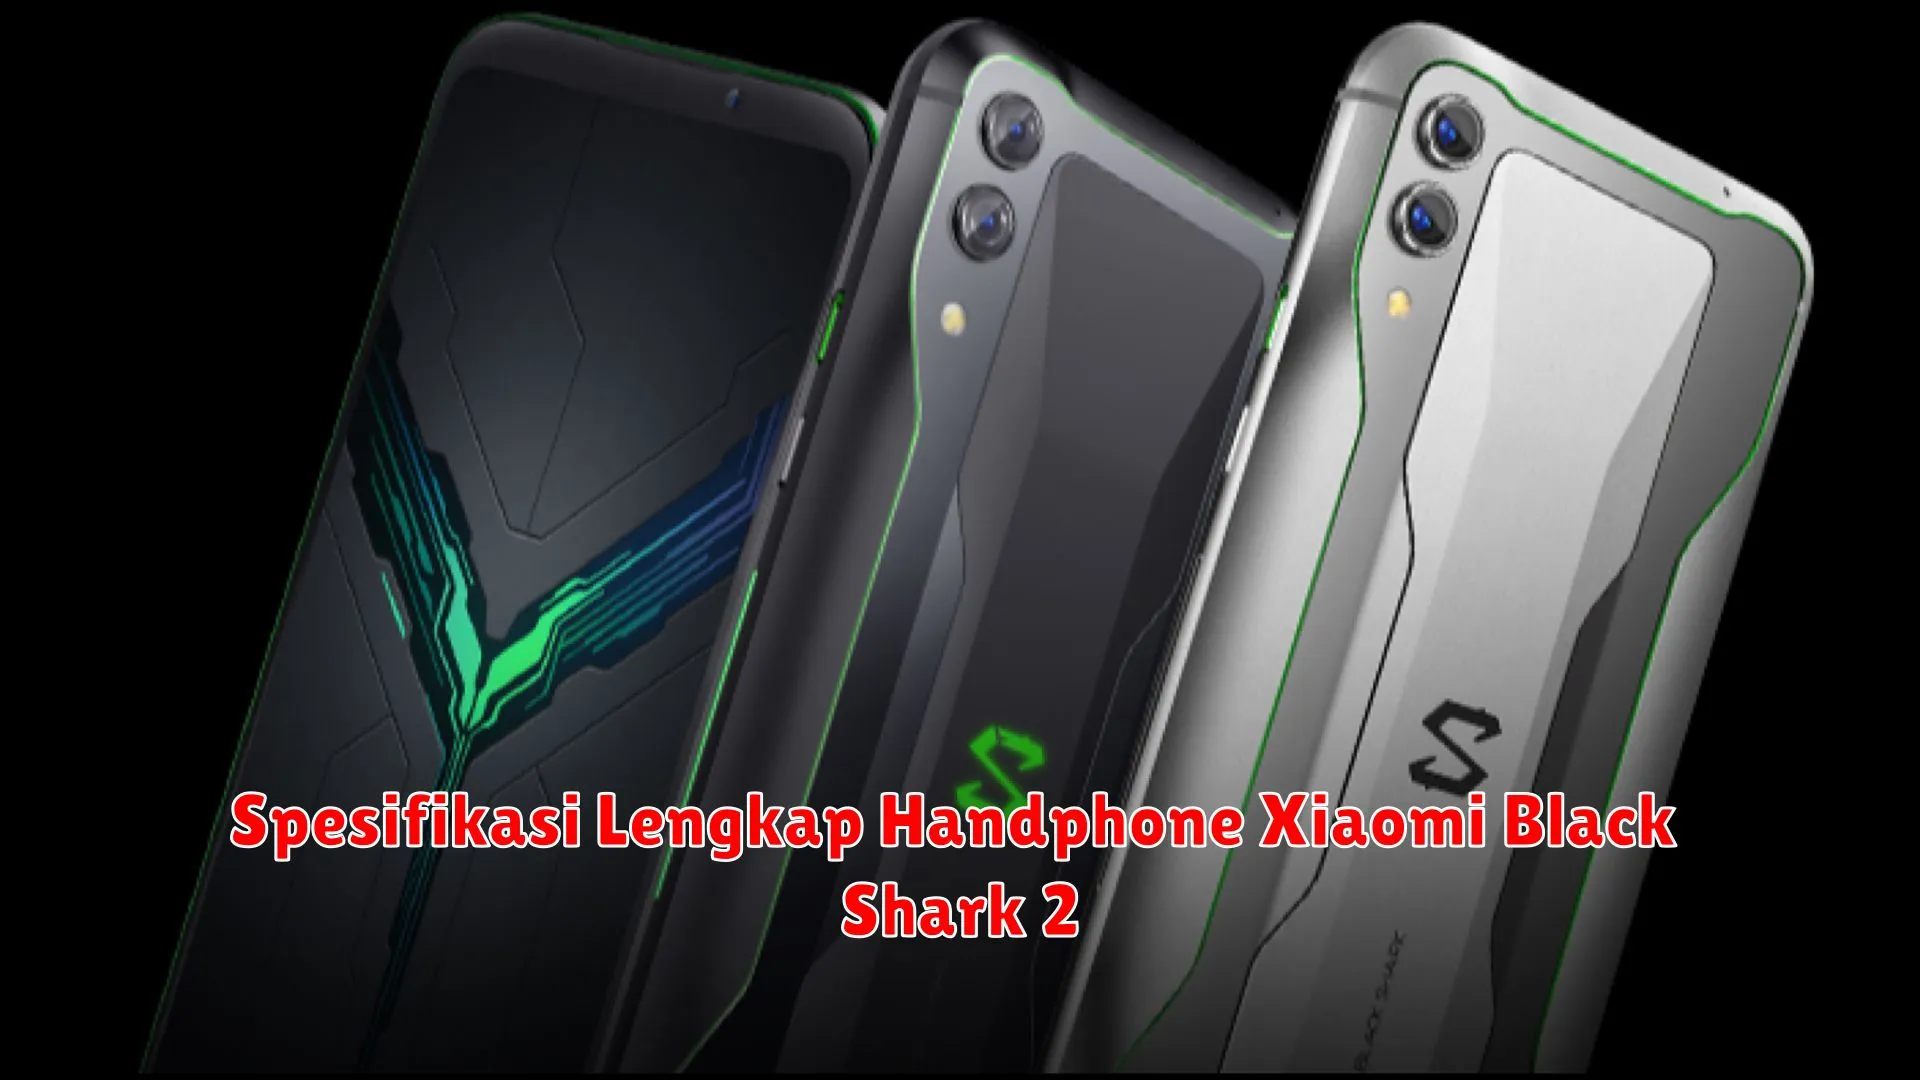 Spesifikasi Lengkap Handphone Xiaomi Black Shark 2